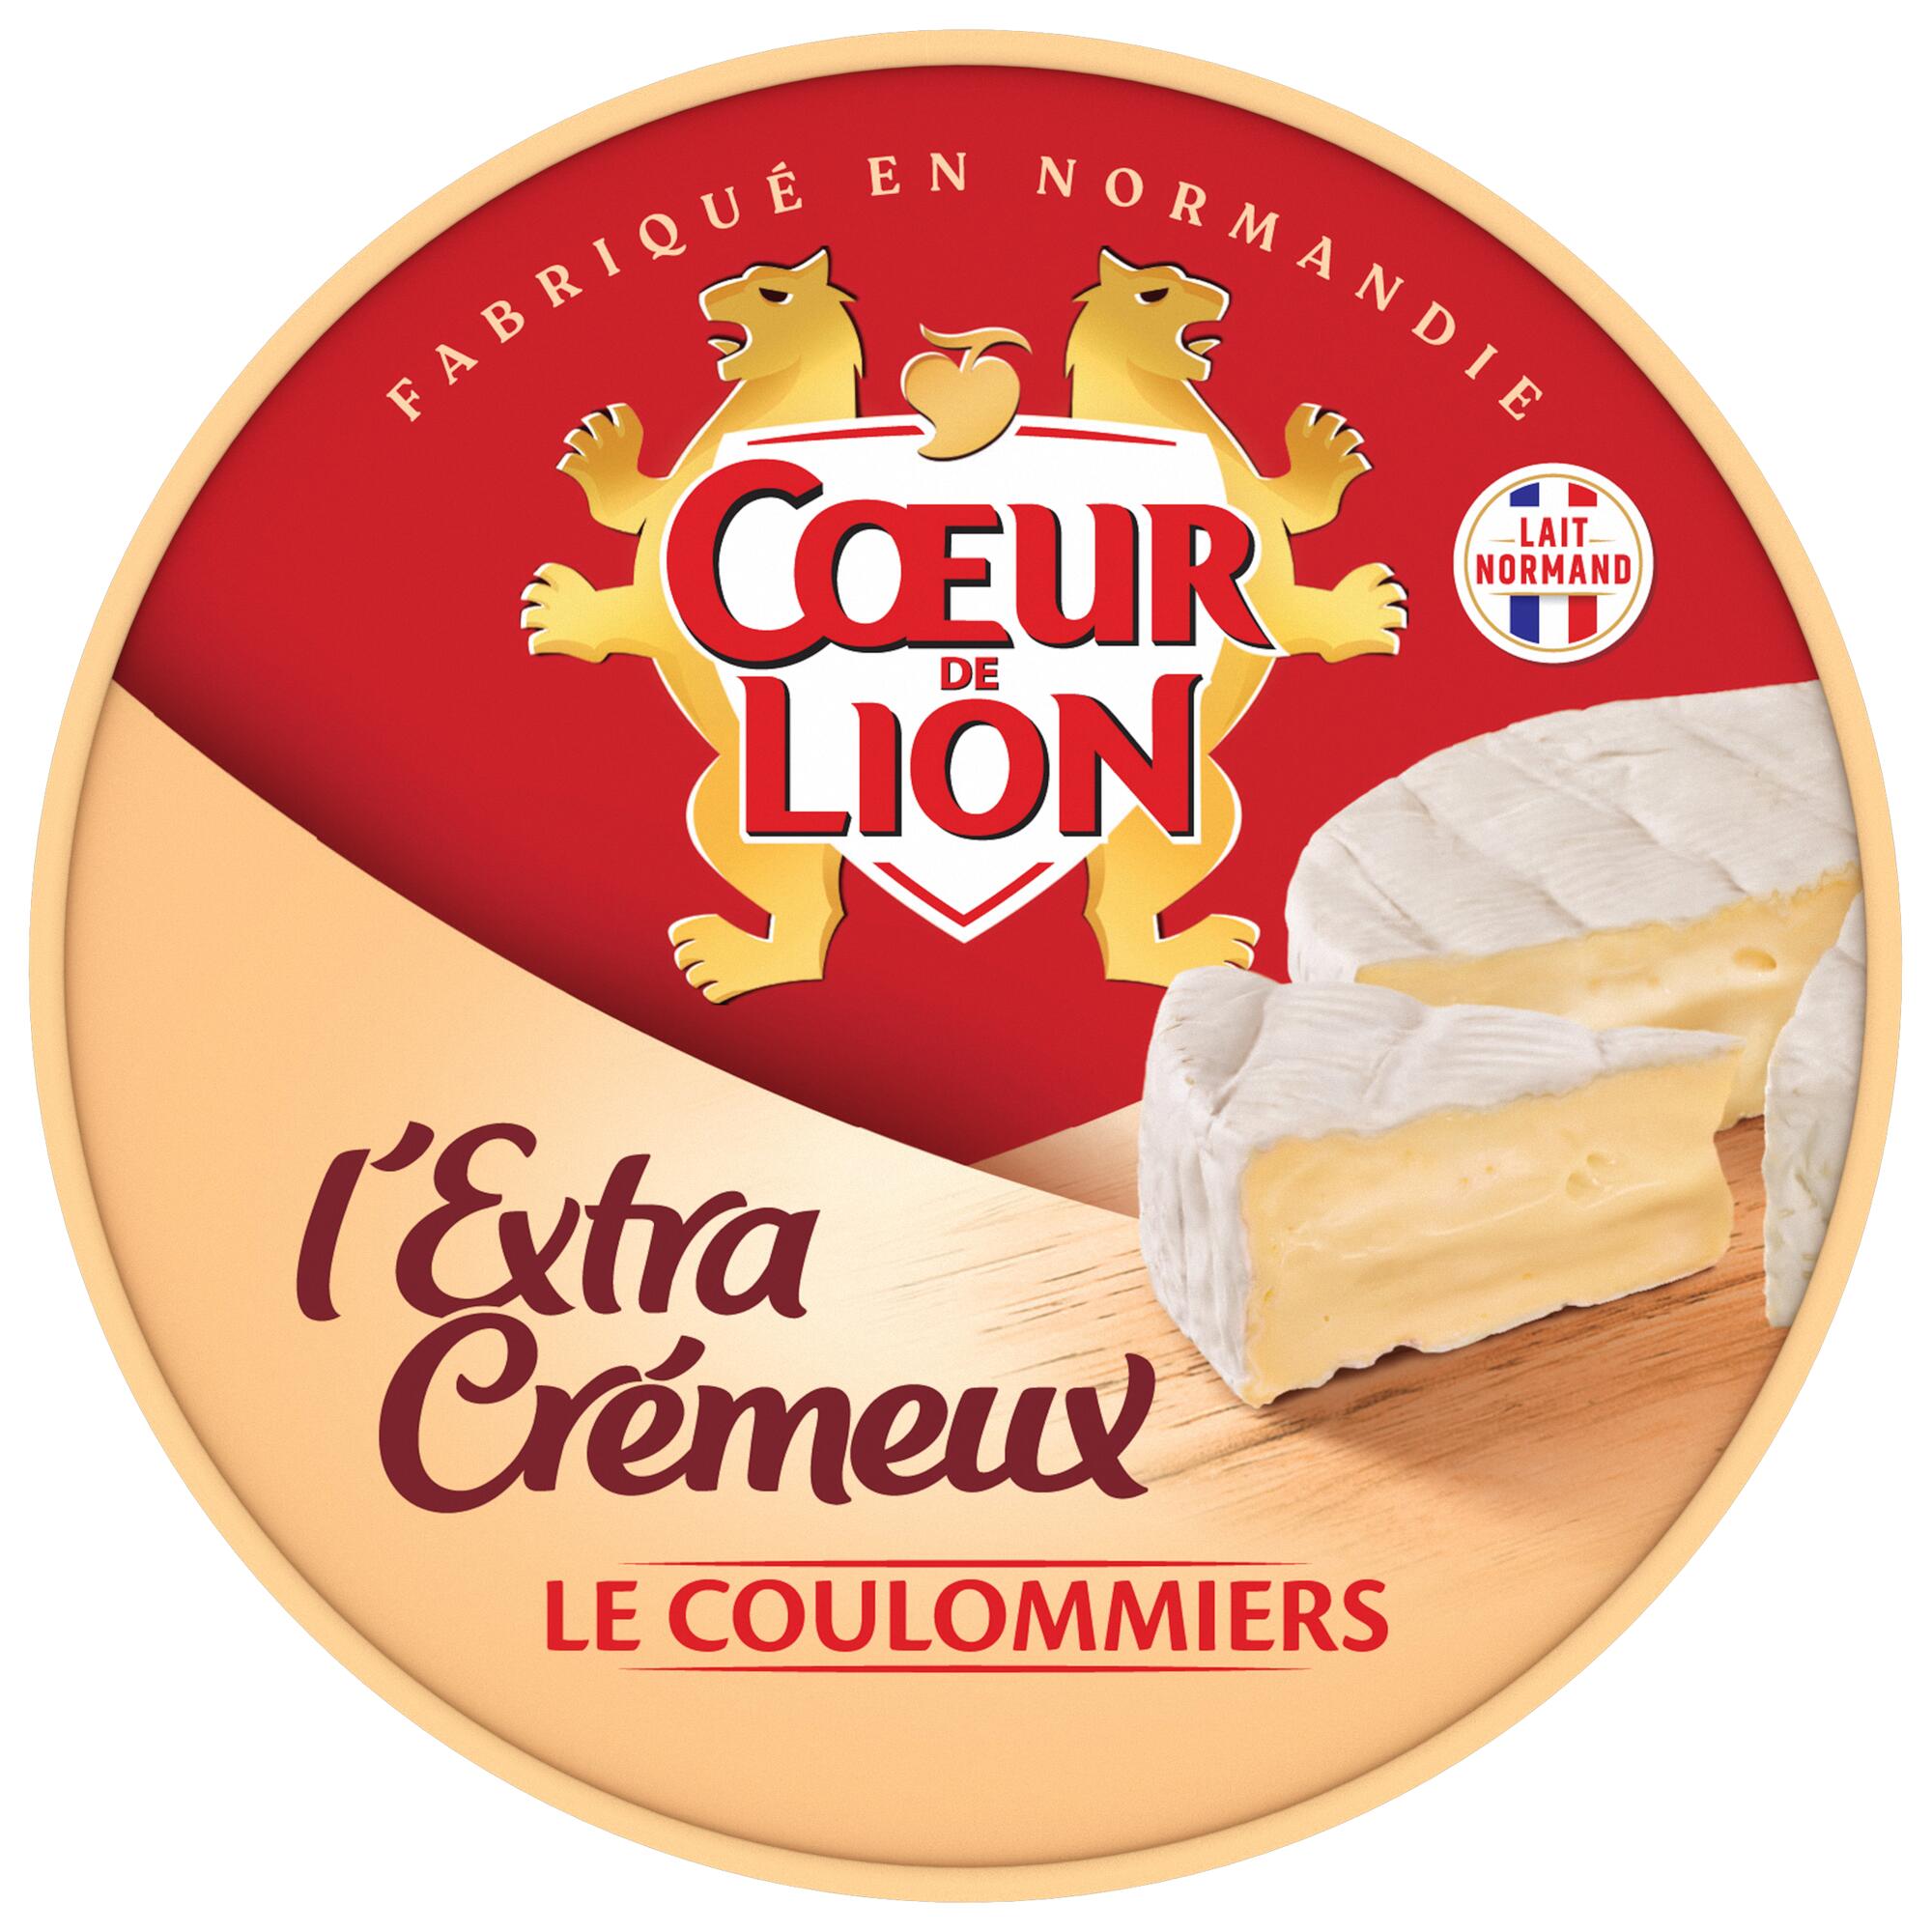 Cœur de Lion Coulommiers l'Extra Crémeux